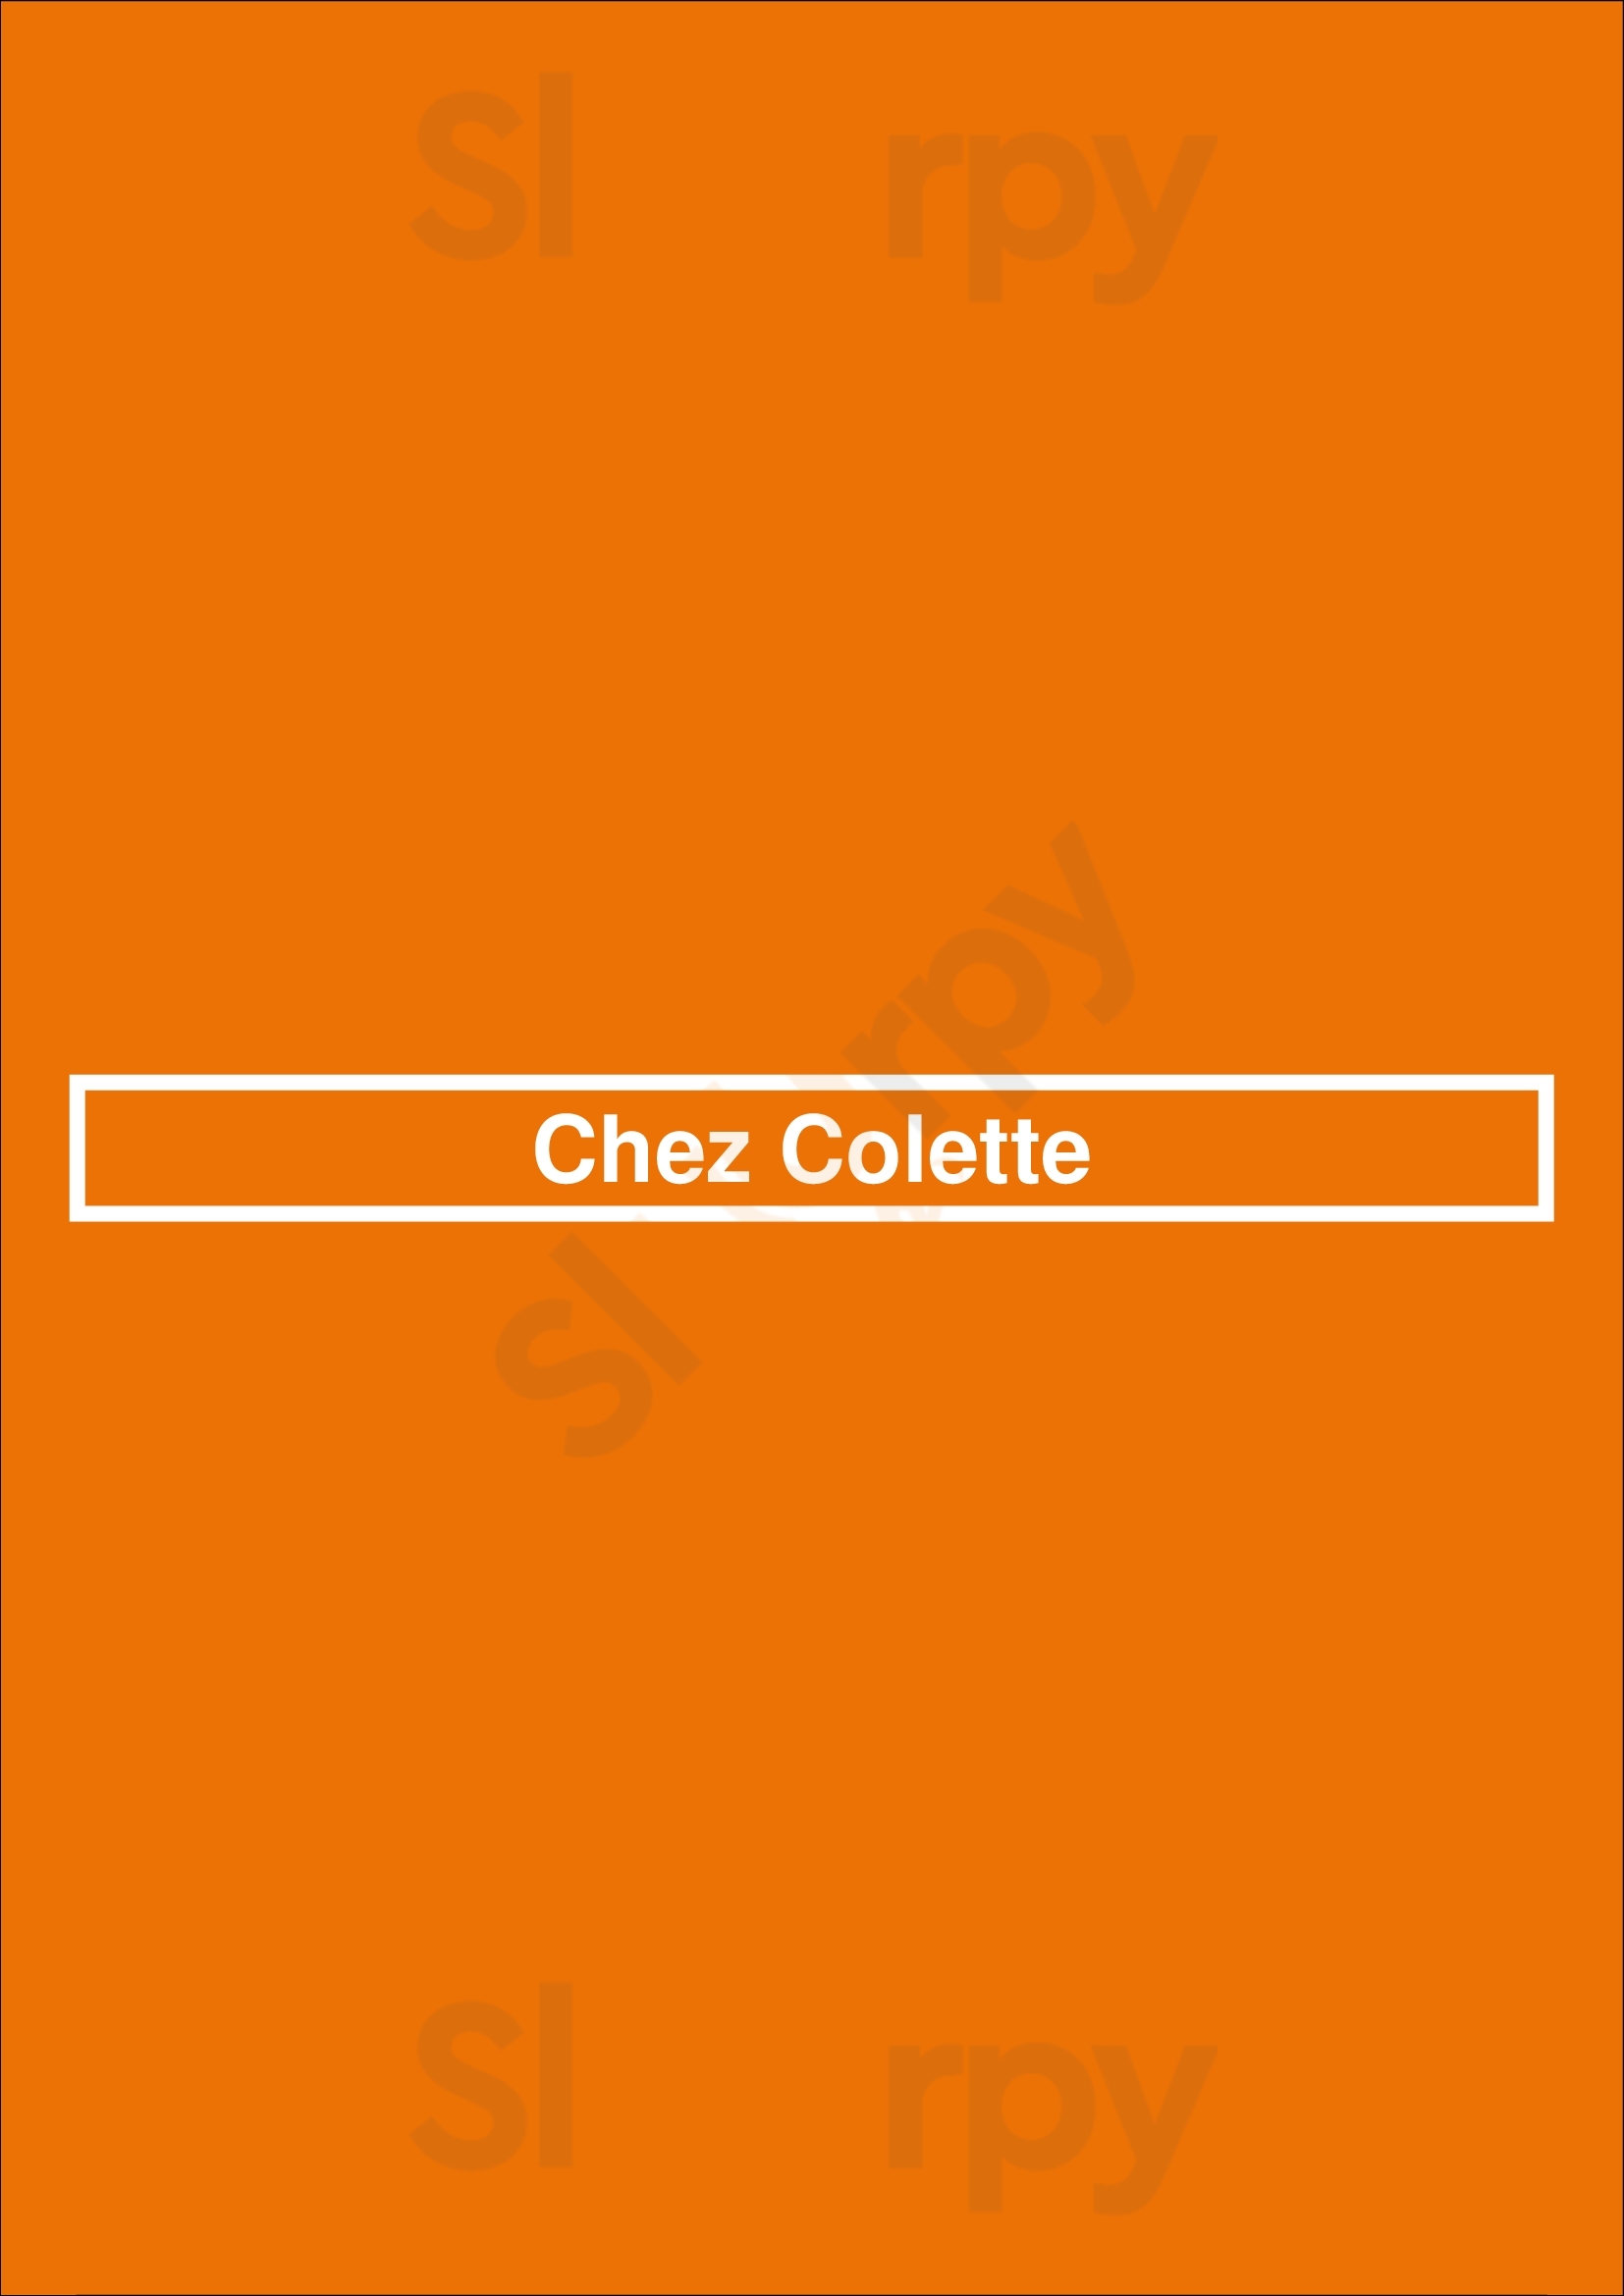 Chez Colette Paris Menu - 1